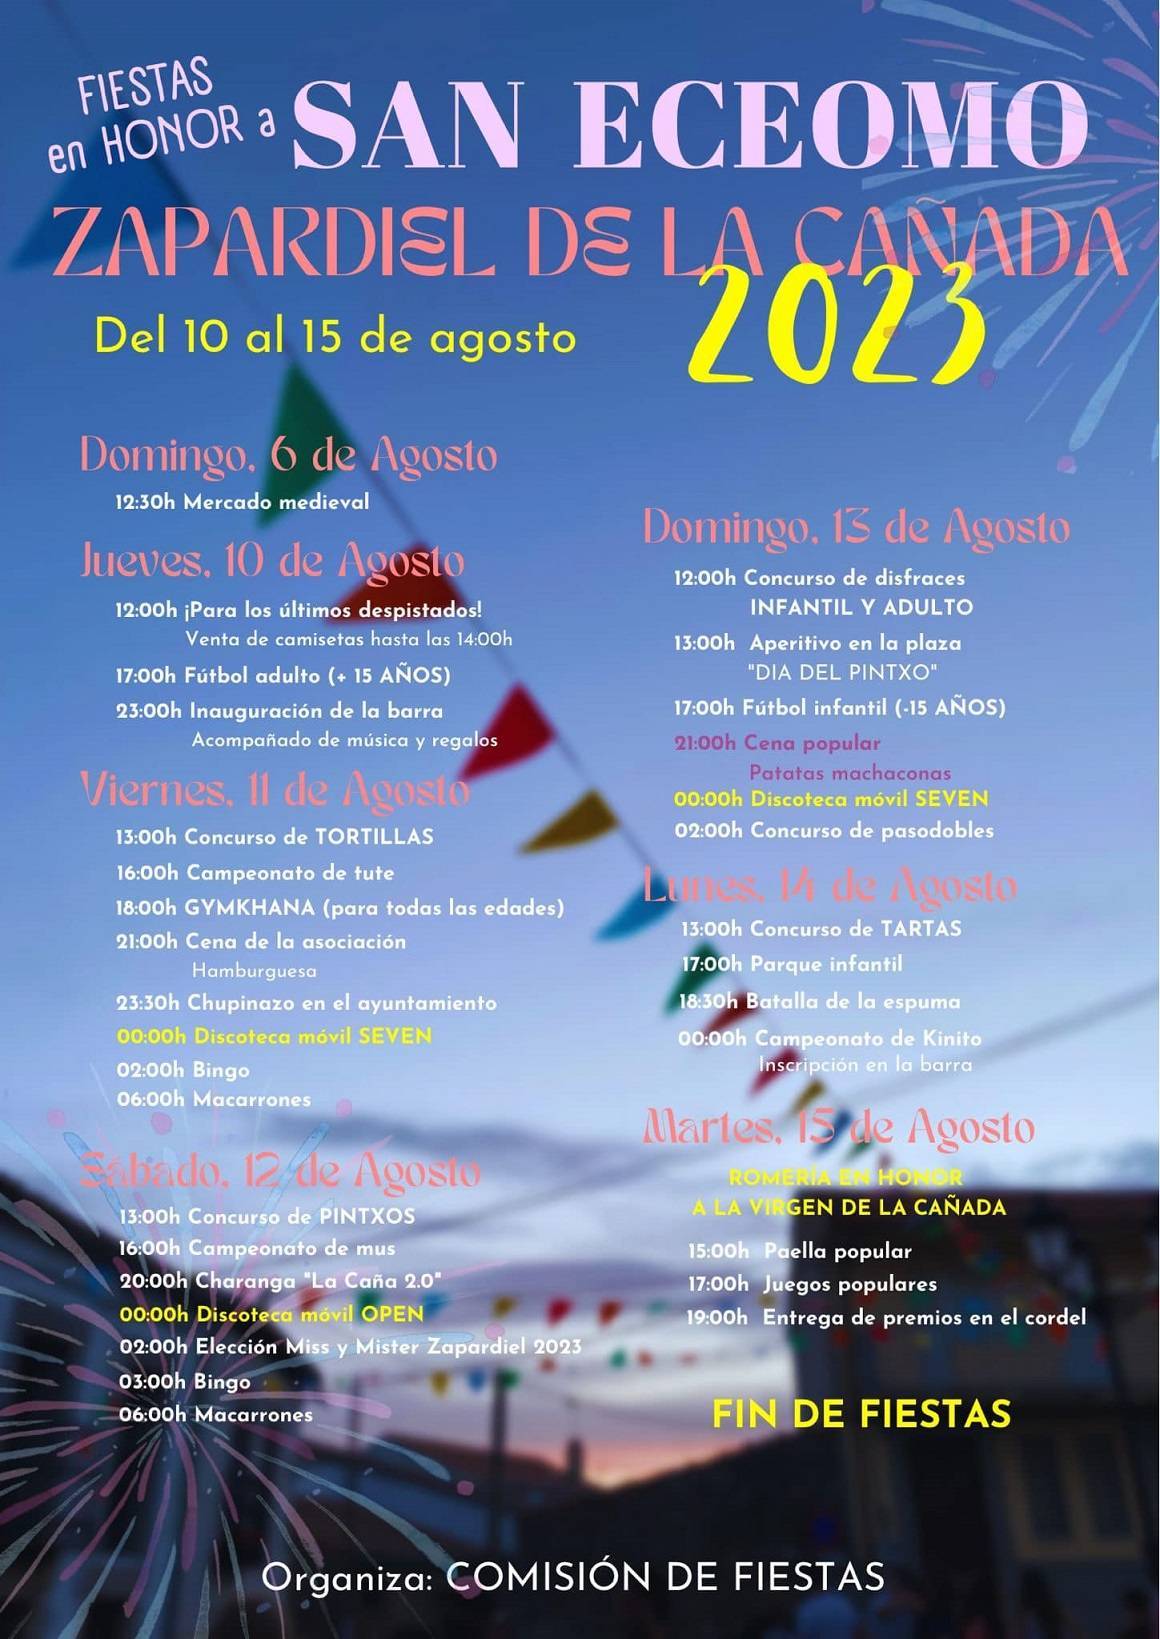 Fiestas en honor a San Eceomo (2023) - Zapardiel de la Cañada (Ávila)